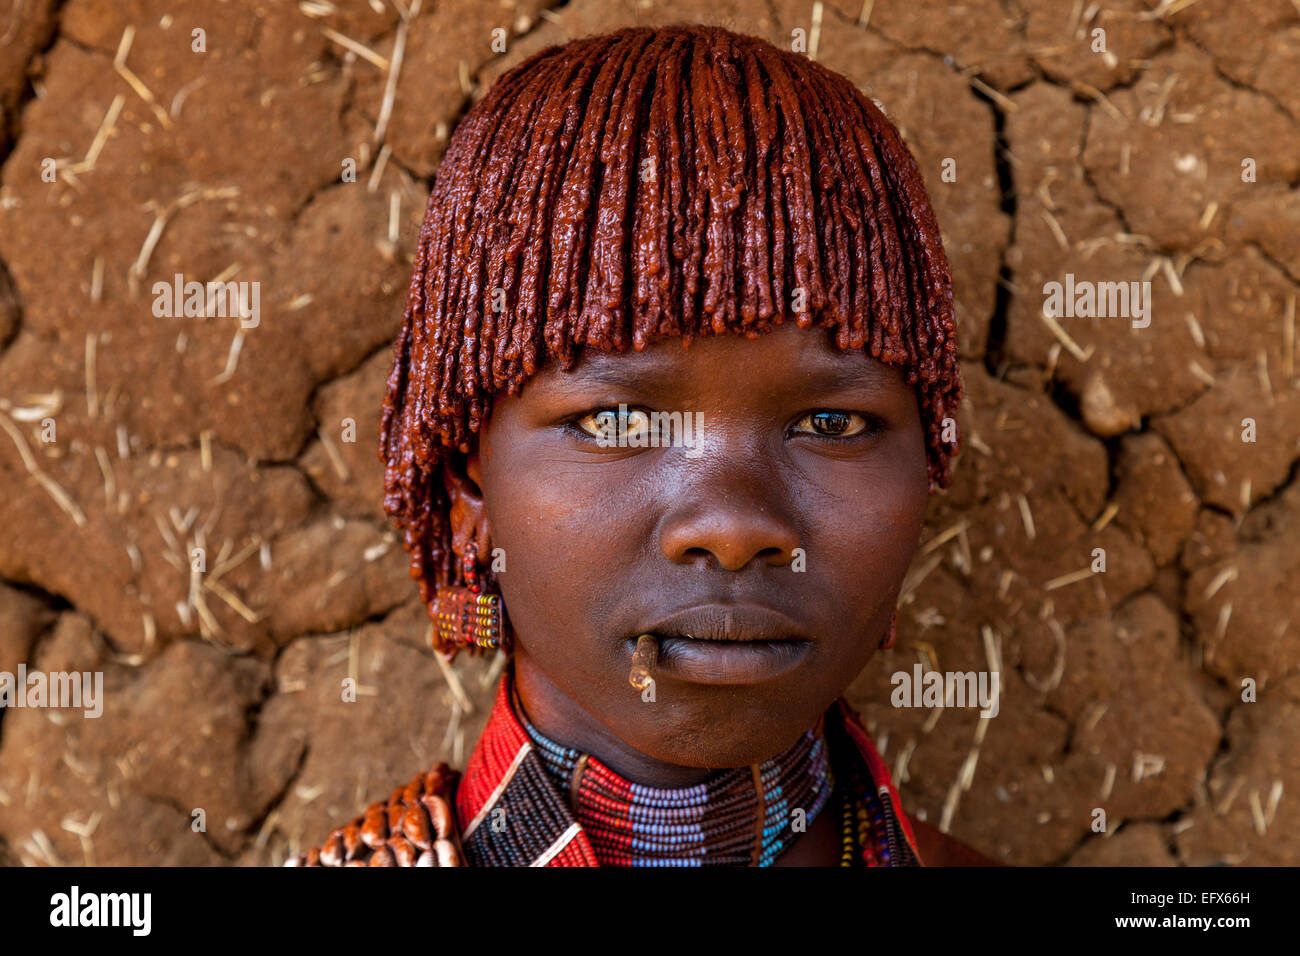 Un Portrait d'une jeune femme de la tribu Hamer, le marché du lundi, Turmi, la vallée de l'Omo, Ethiopie Banque D'Images